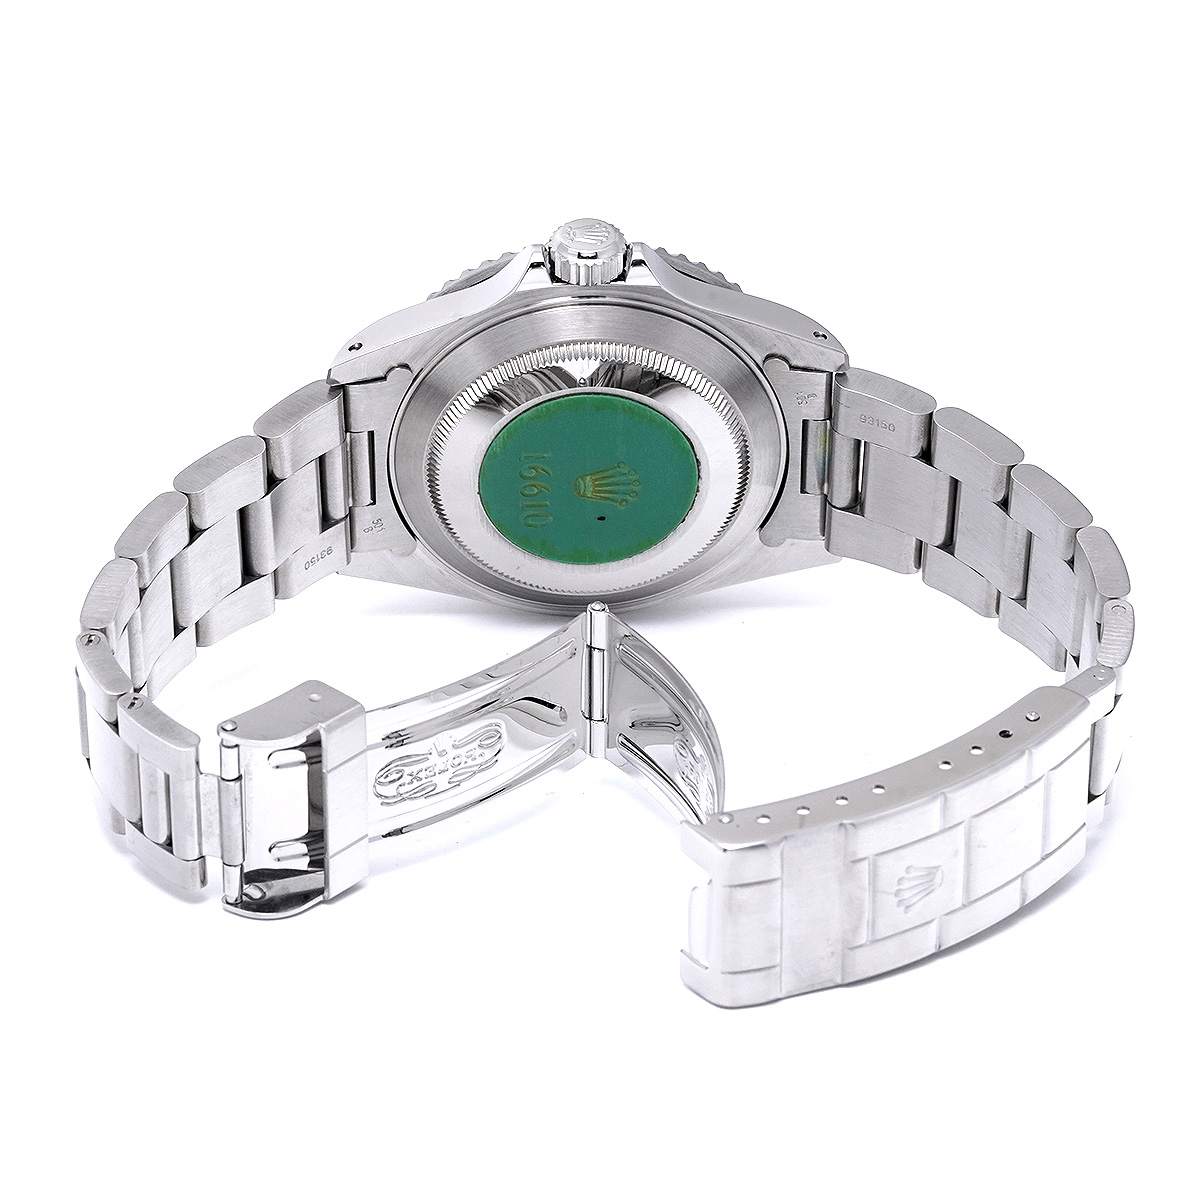 ロレックス / ROLEX サブマリーナ デイト 16610 ブラック メンズ 時計 【中古】【wristwatch】